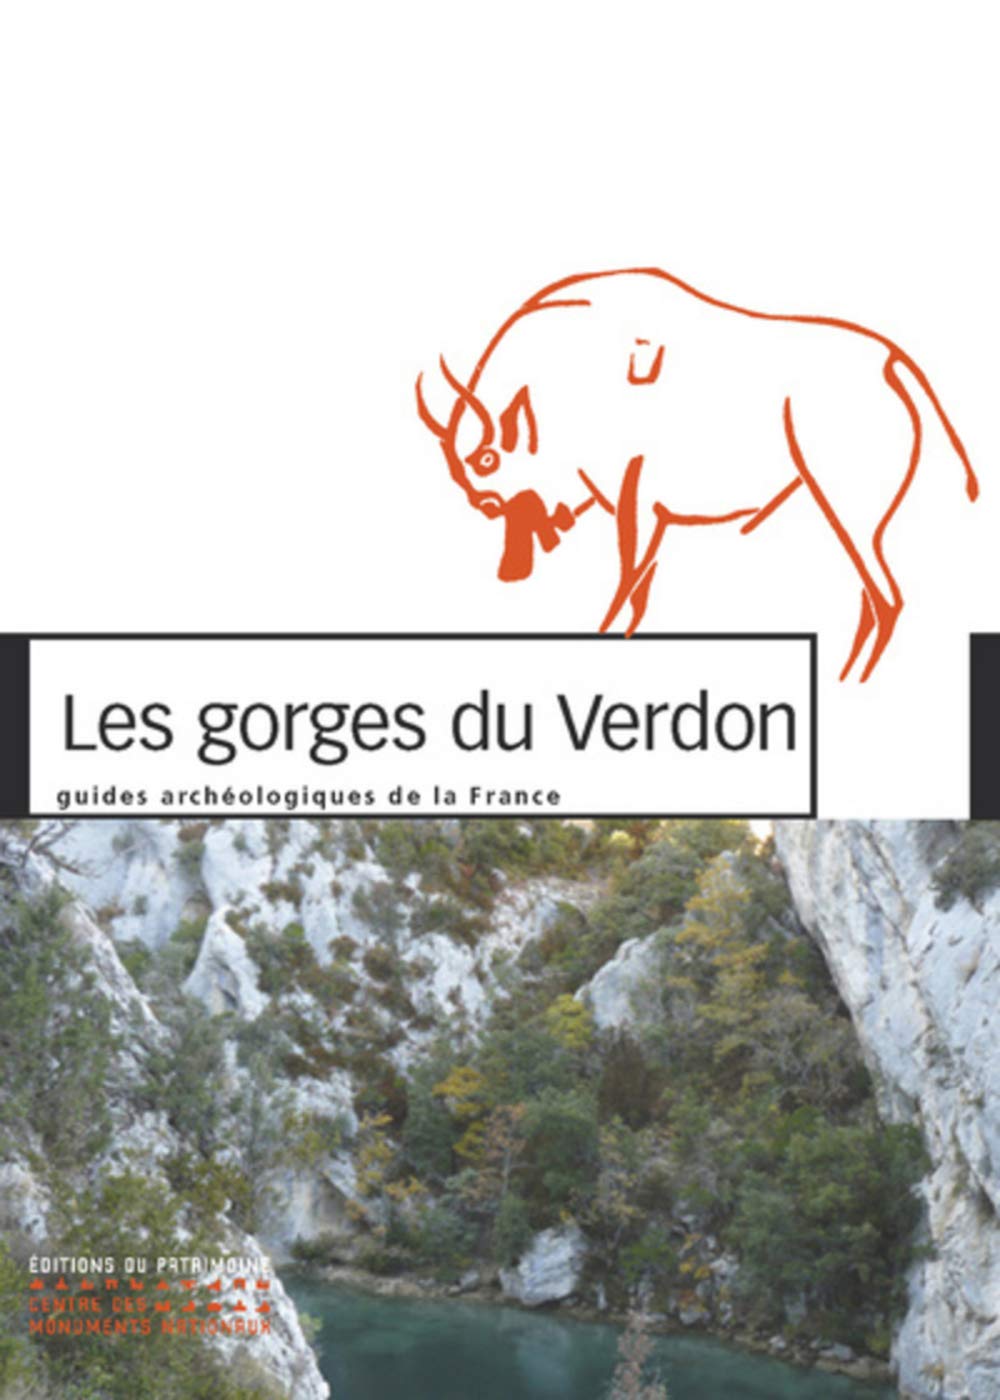 Les gorges du Verdon, 2019, 127 p.